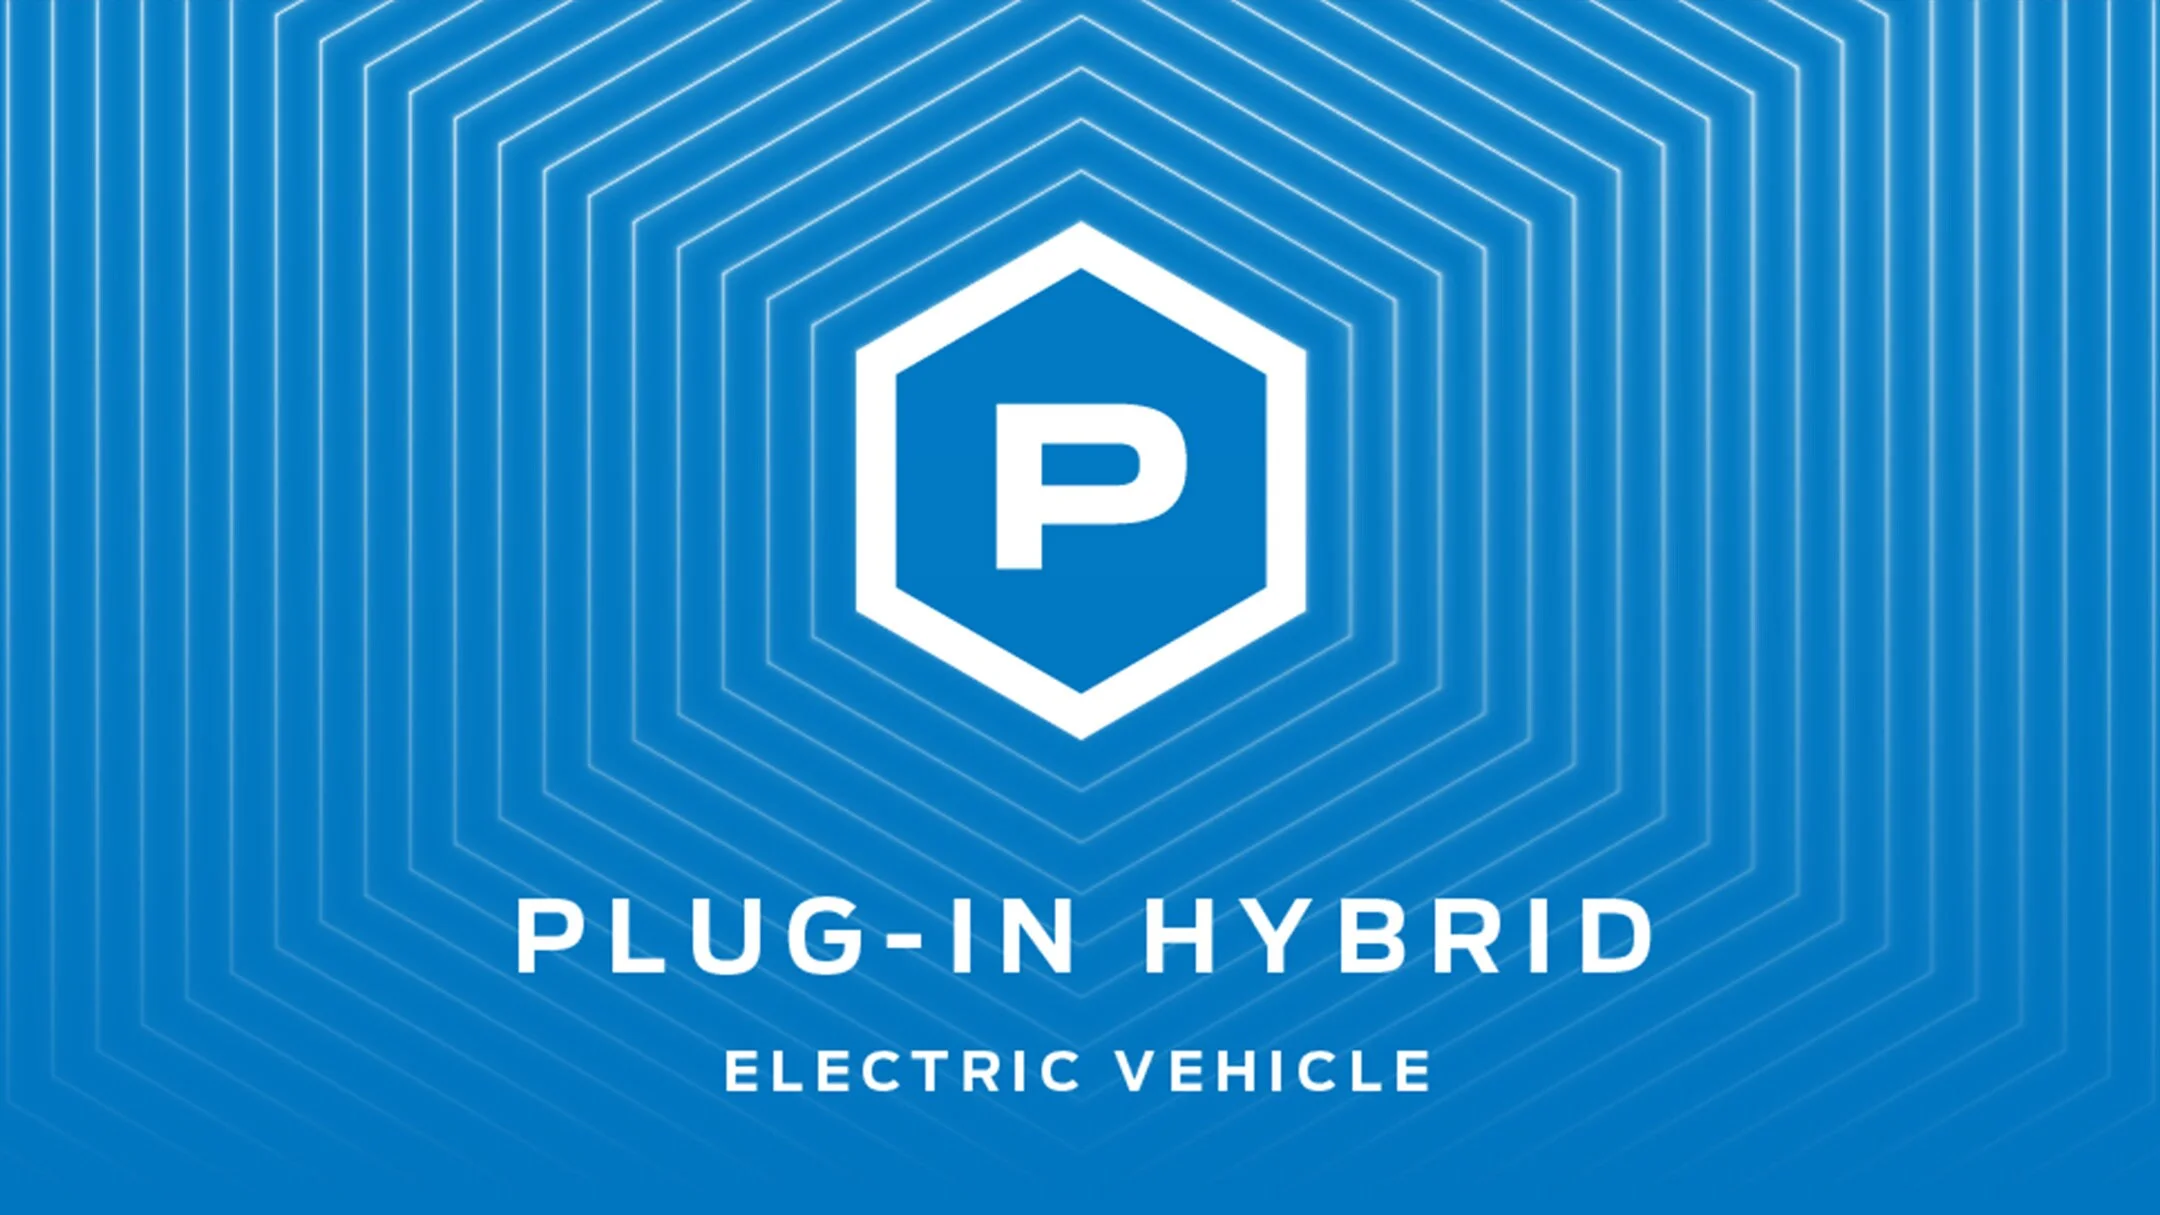 Ford Electric Plug-in Hybrid